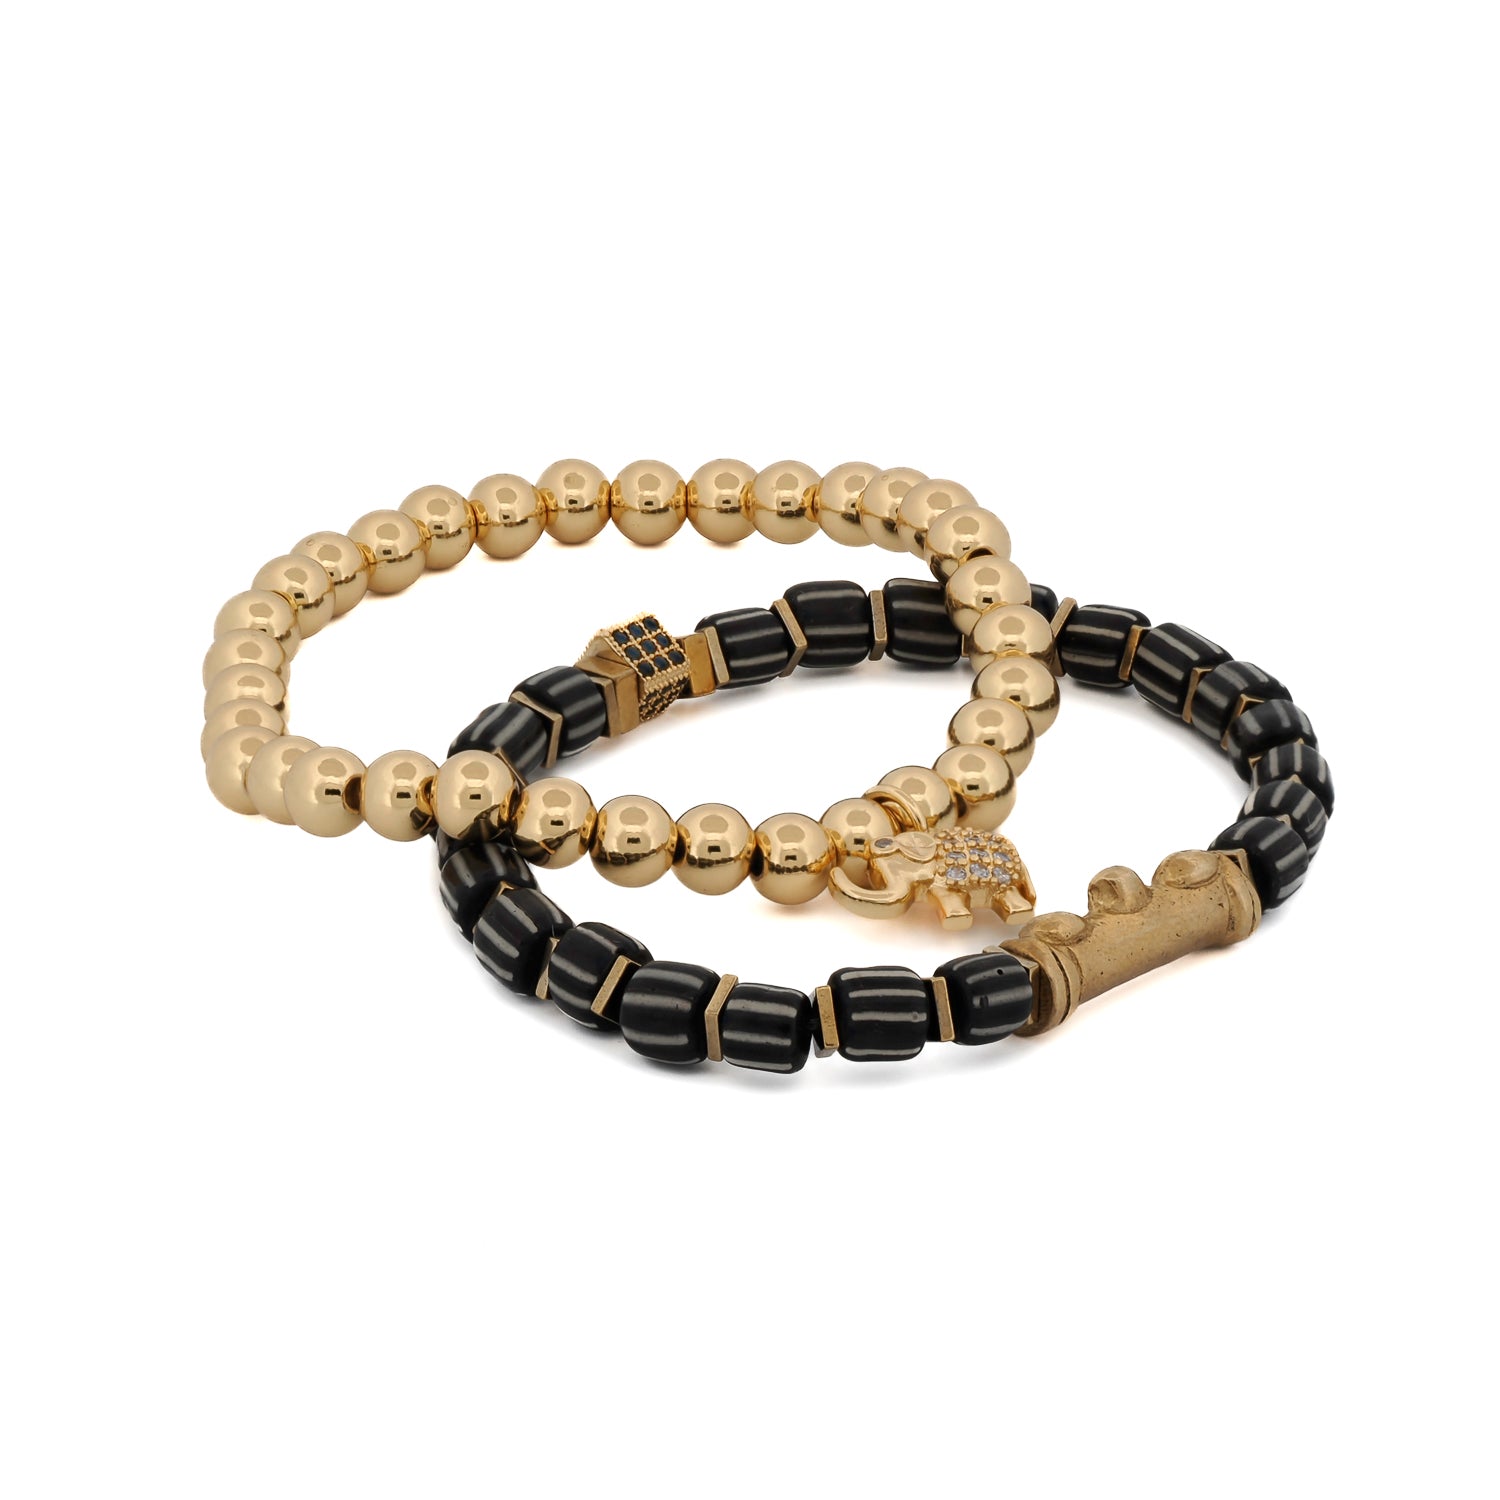 Prosperous Glimmer: Gold Beads Bracelet